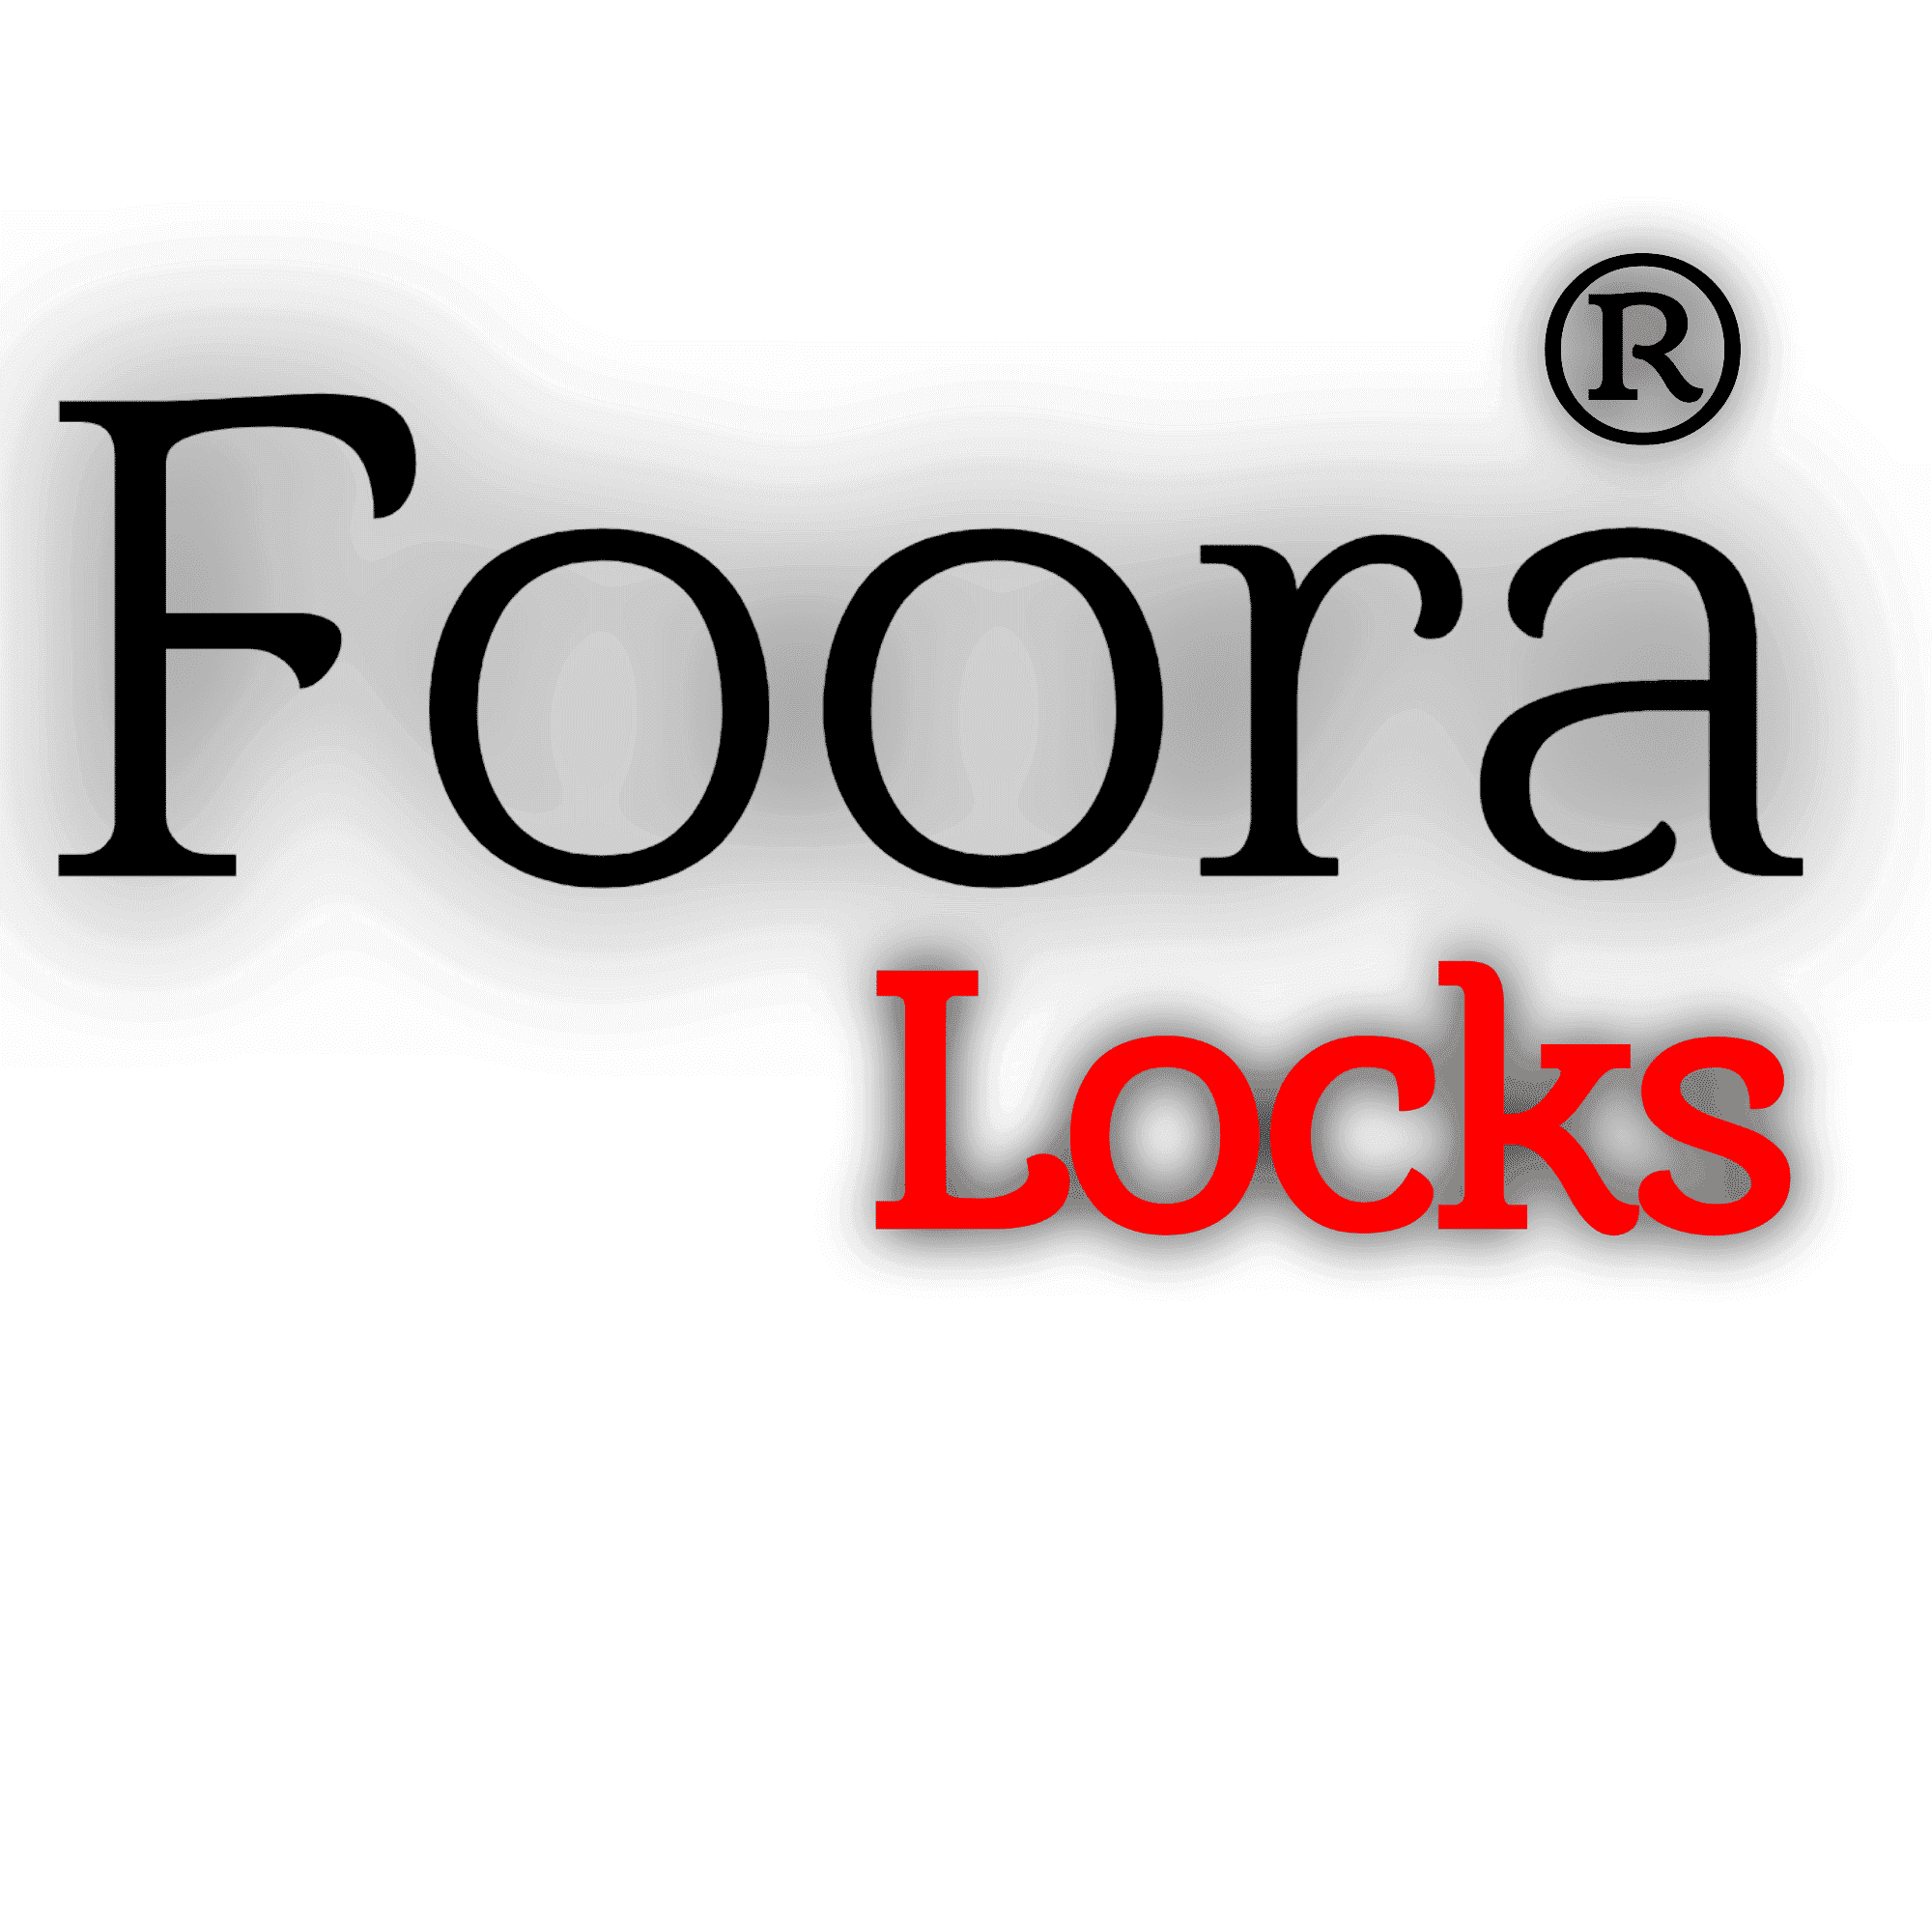 FOORA LOCKS (OPC) PRIVATE LIMITED